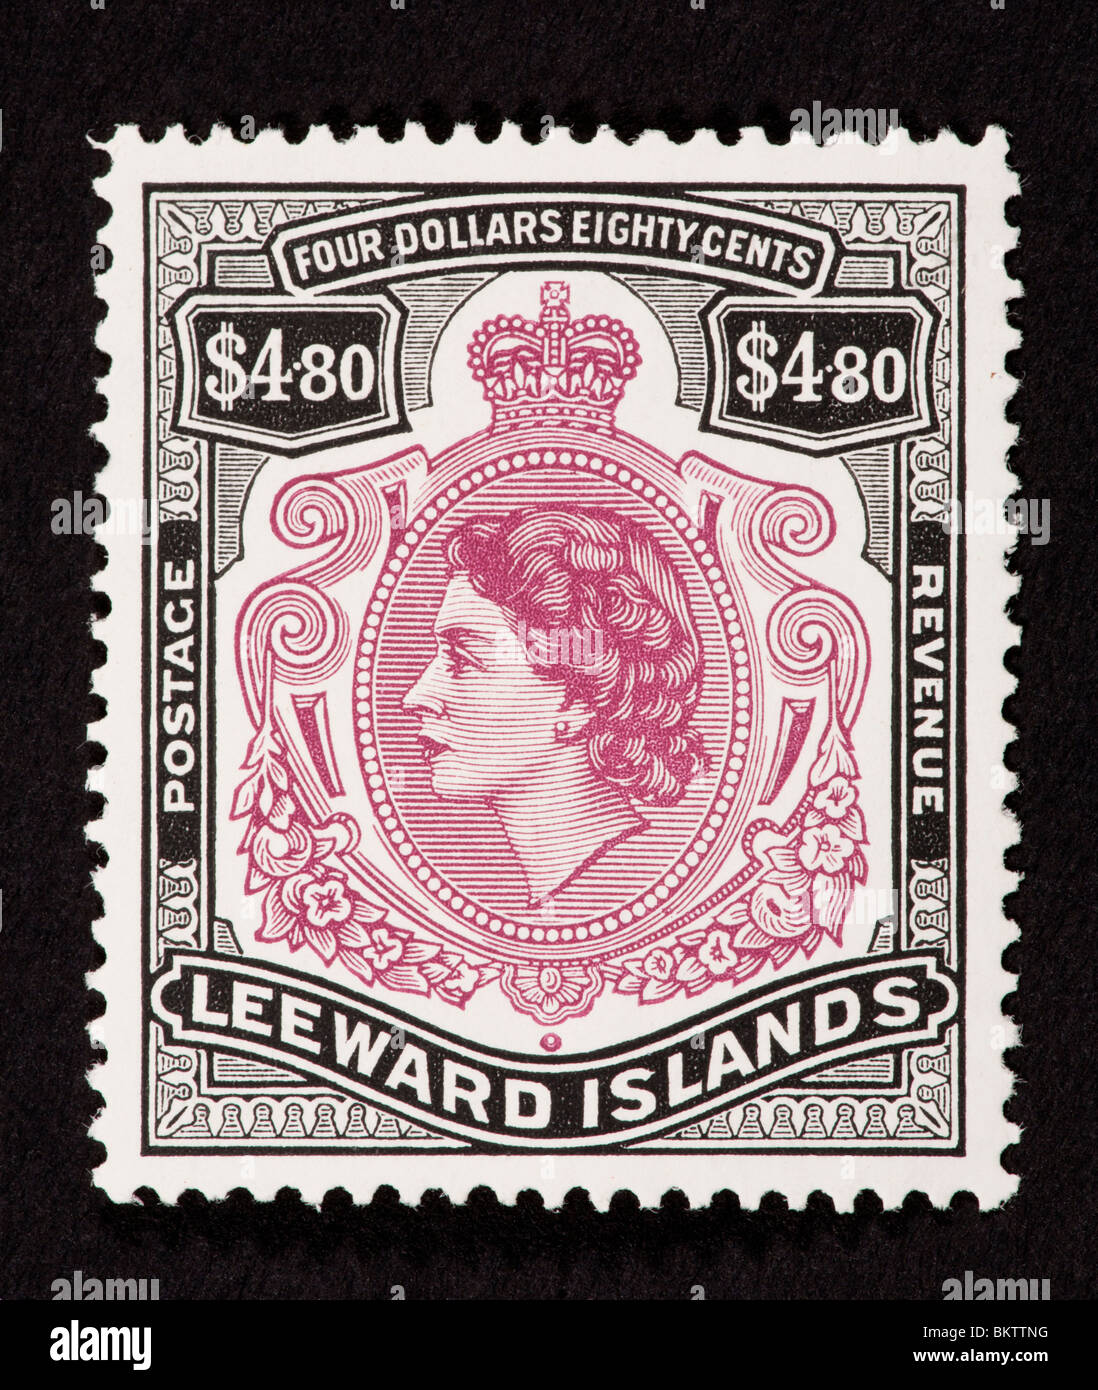 Postage stamp from the Leeward Islands depicting Queen Elizabeth II. Stock Photo